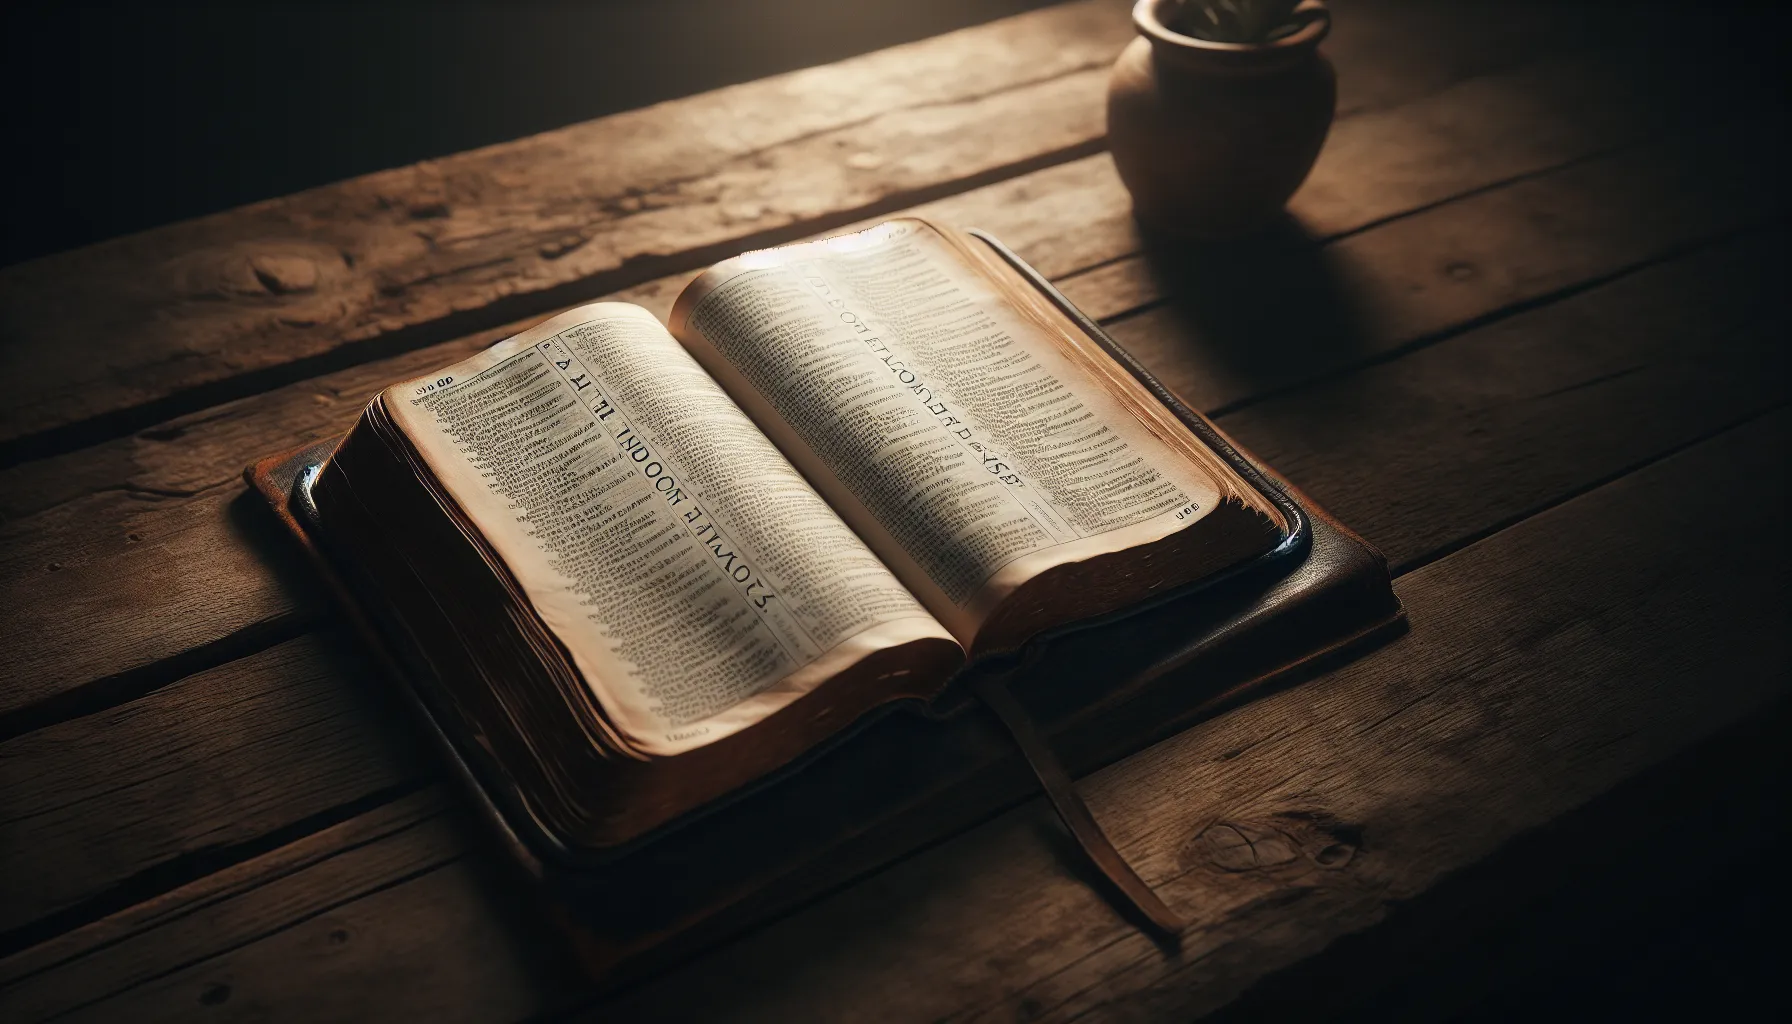 Imagen ilustrativa de Isaías 9:6 en una Biblia abierta sobre una mesa